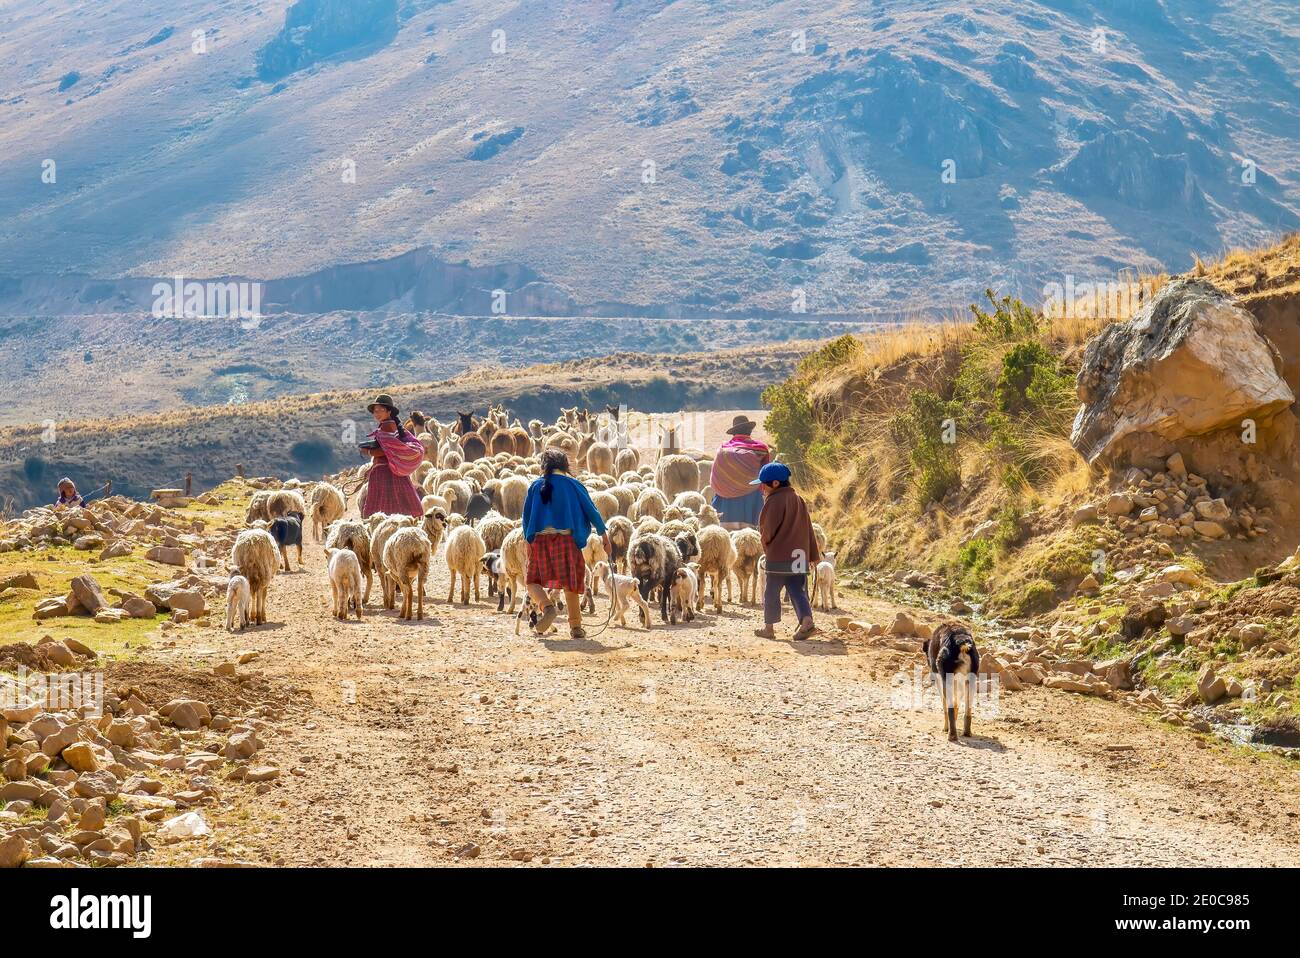 Rural Peru - 4 settembre 2011. I membri di una famiglia peruviana guidano un gregge di pecore e lllama lungo una strada sterrata in un paesaggio montuoso, secco, roccioso. Foto Stock